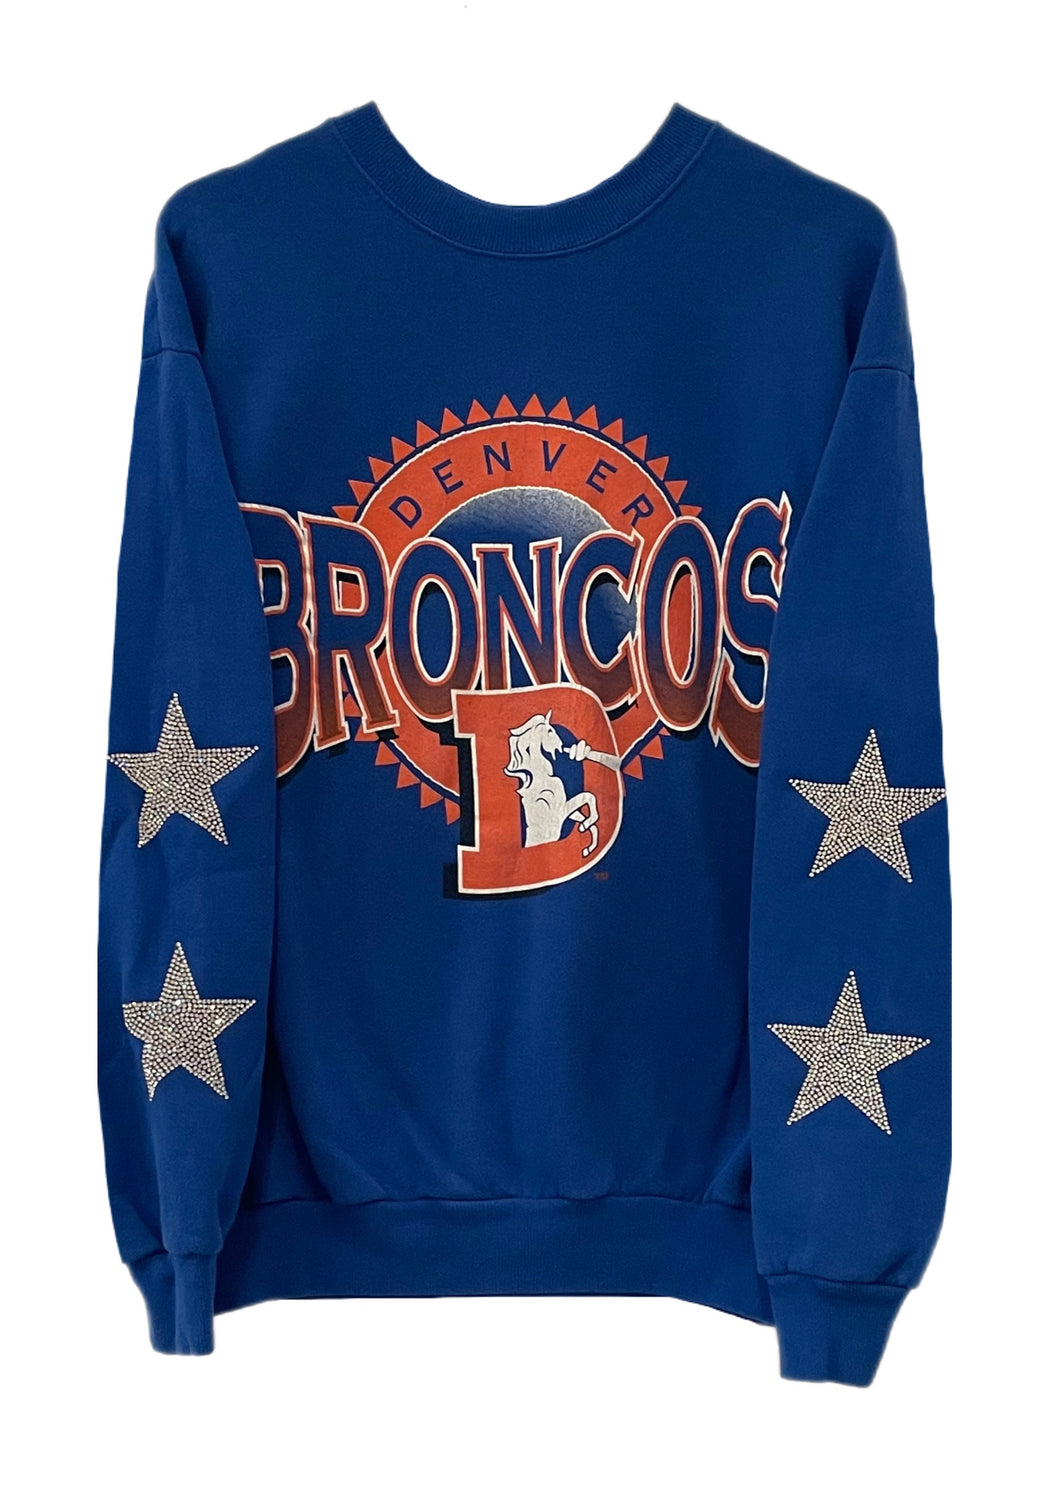 Denver Broncos, NFL One of a KIND Vintage Sweatshirt with Crystal Star Design